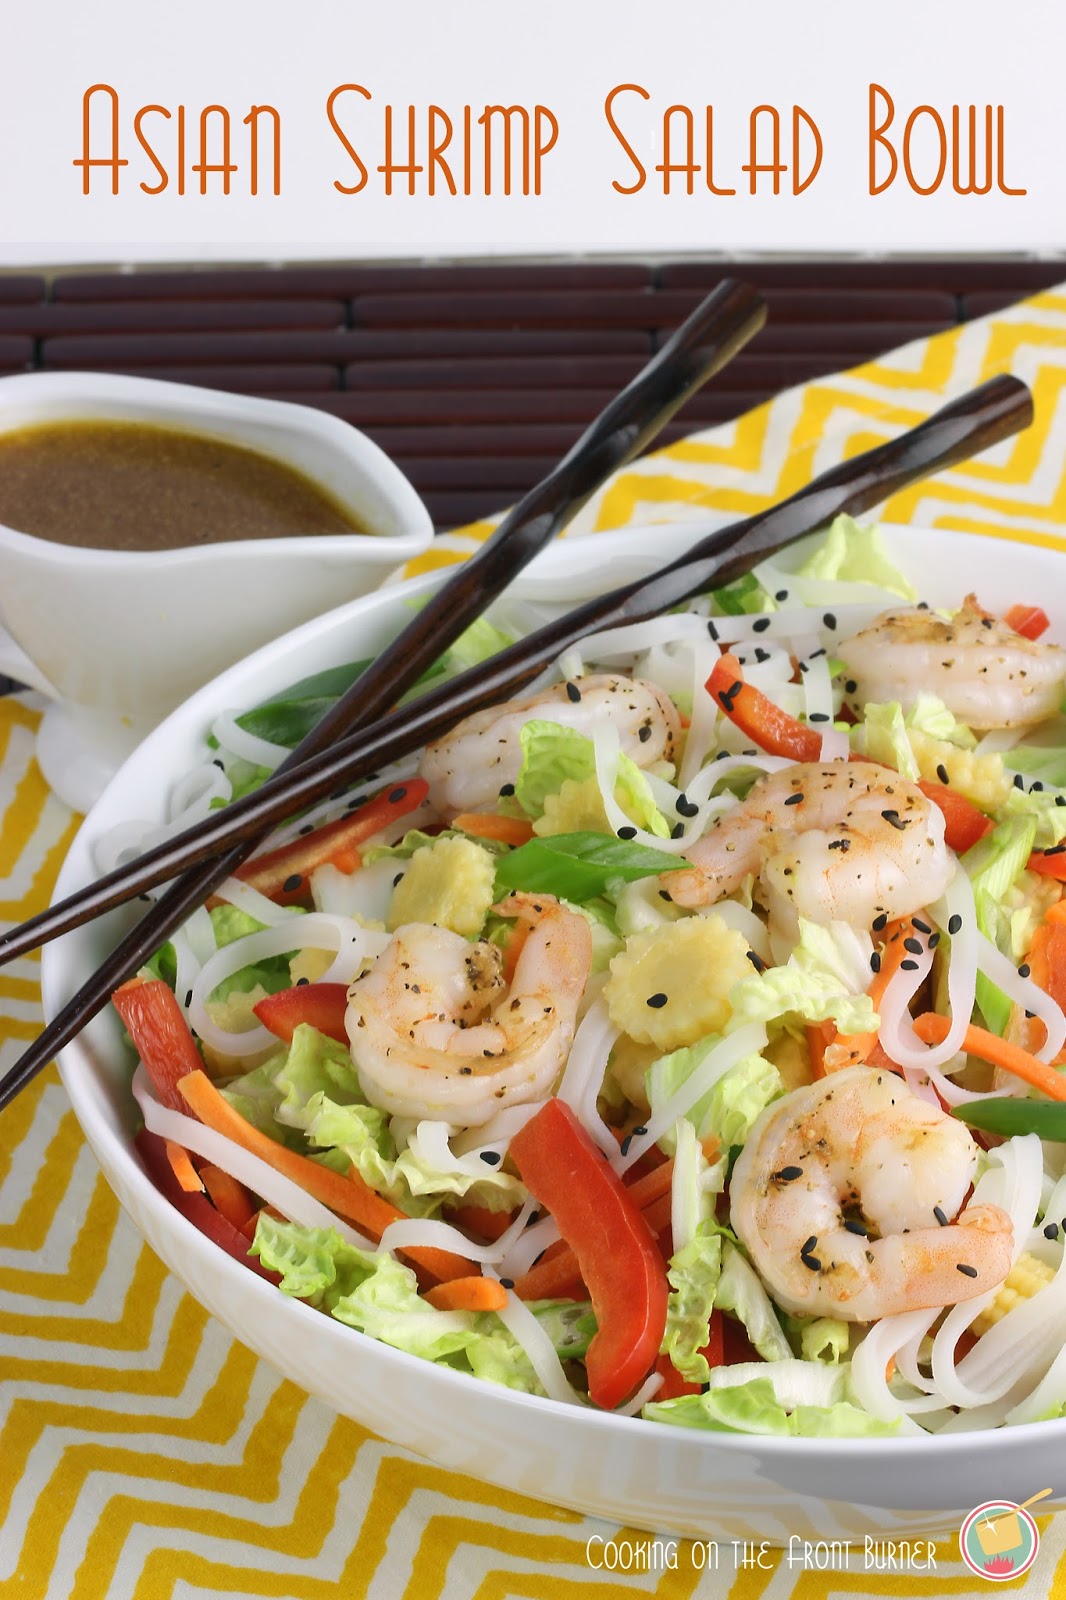 Asian Shrimp Salad Bowl | 25+ delicious salad recipes